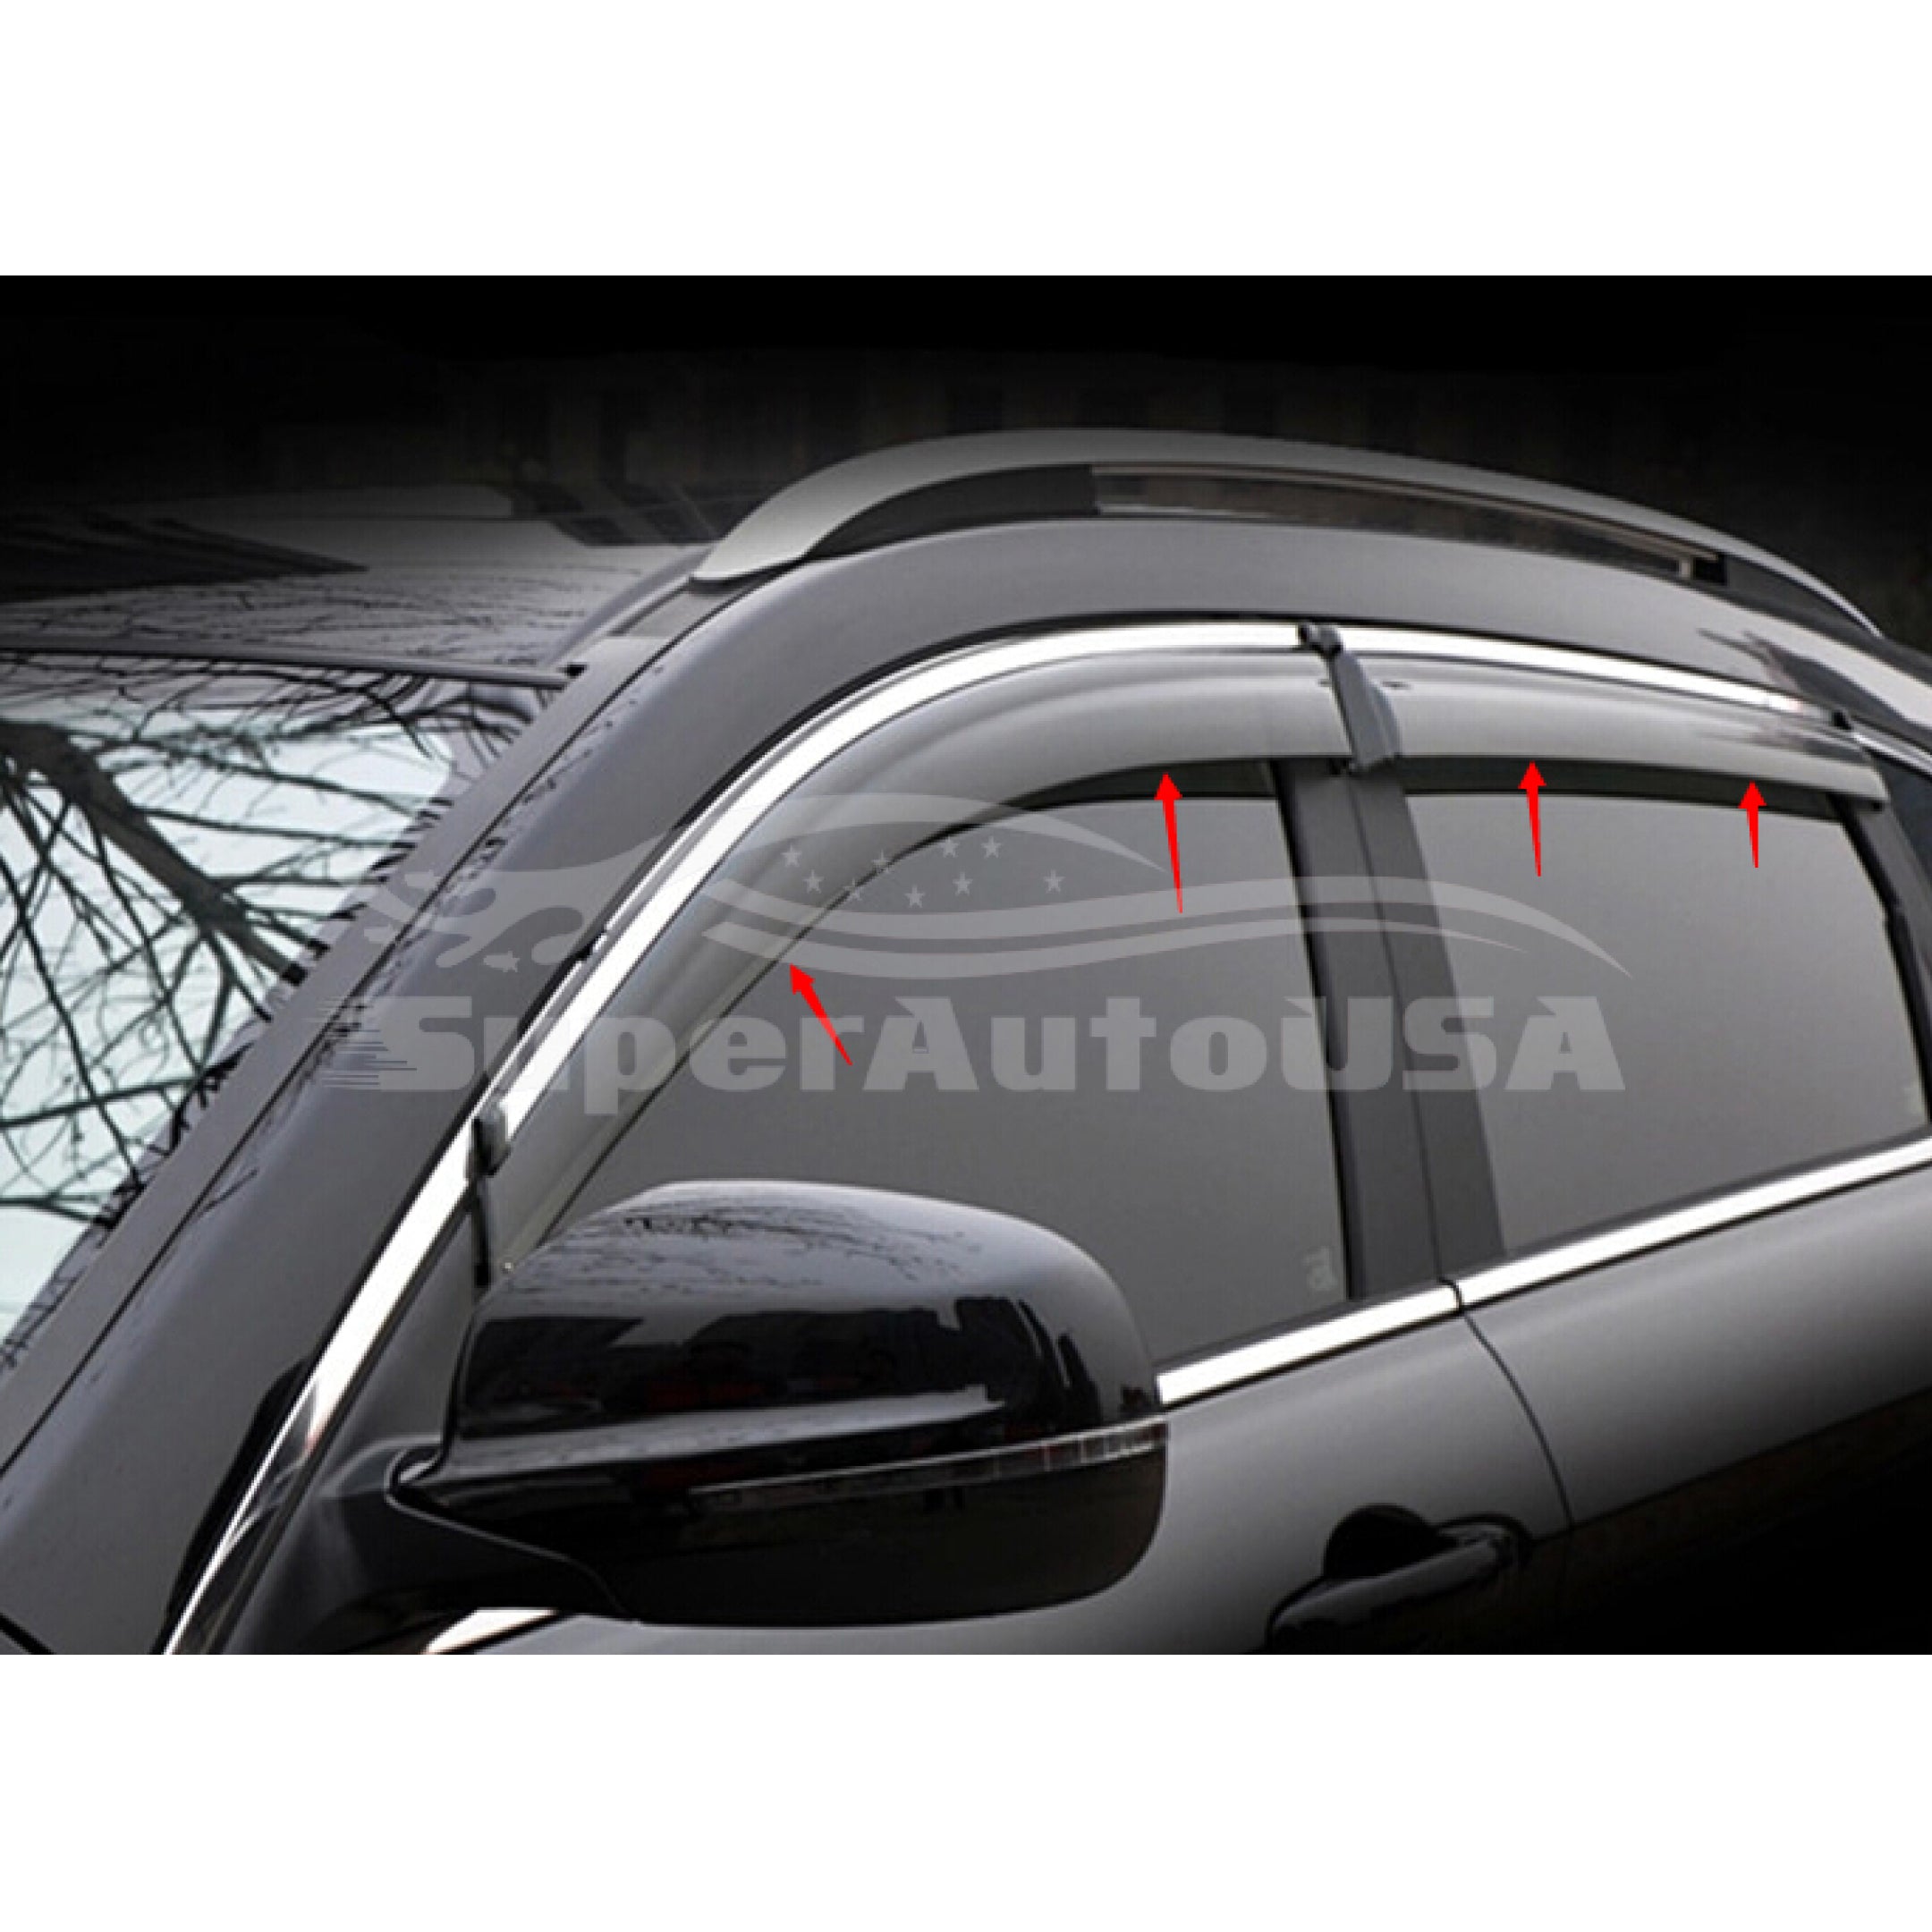 Ajuste 2013-2018 Nissan Altima Clip-On Chrome Trim Vent Window Viseras Rain Sun Wind Guards Shade Deflectors - 0